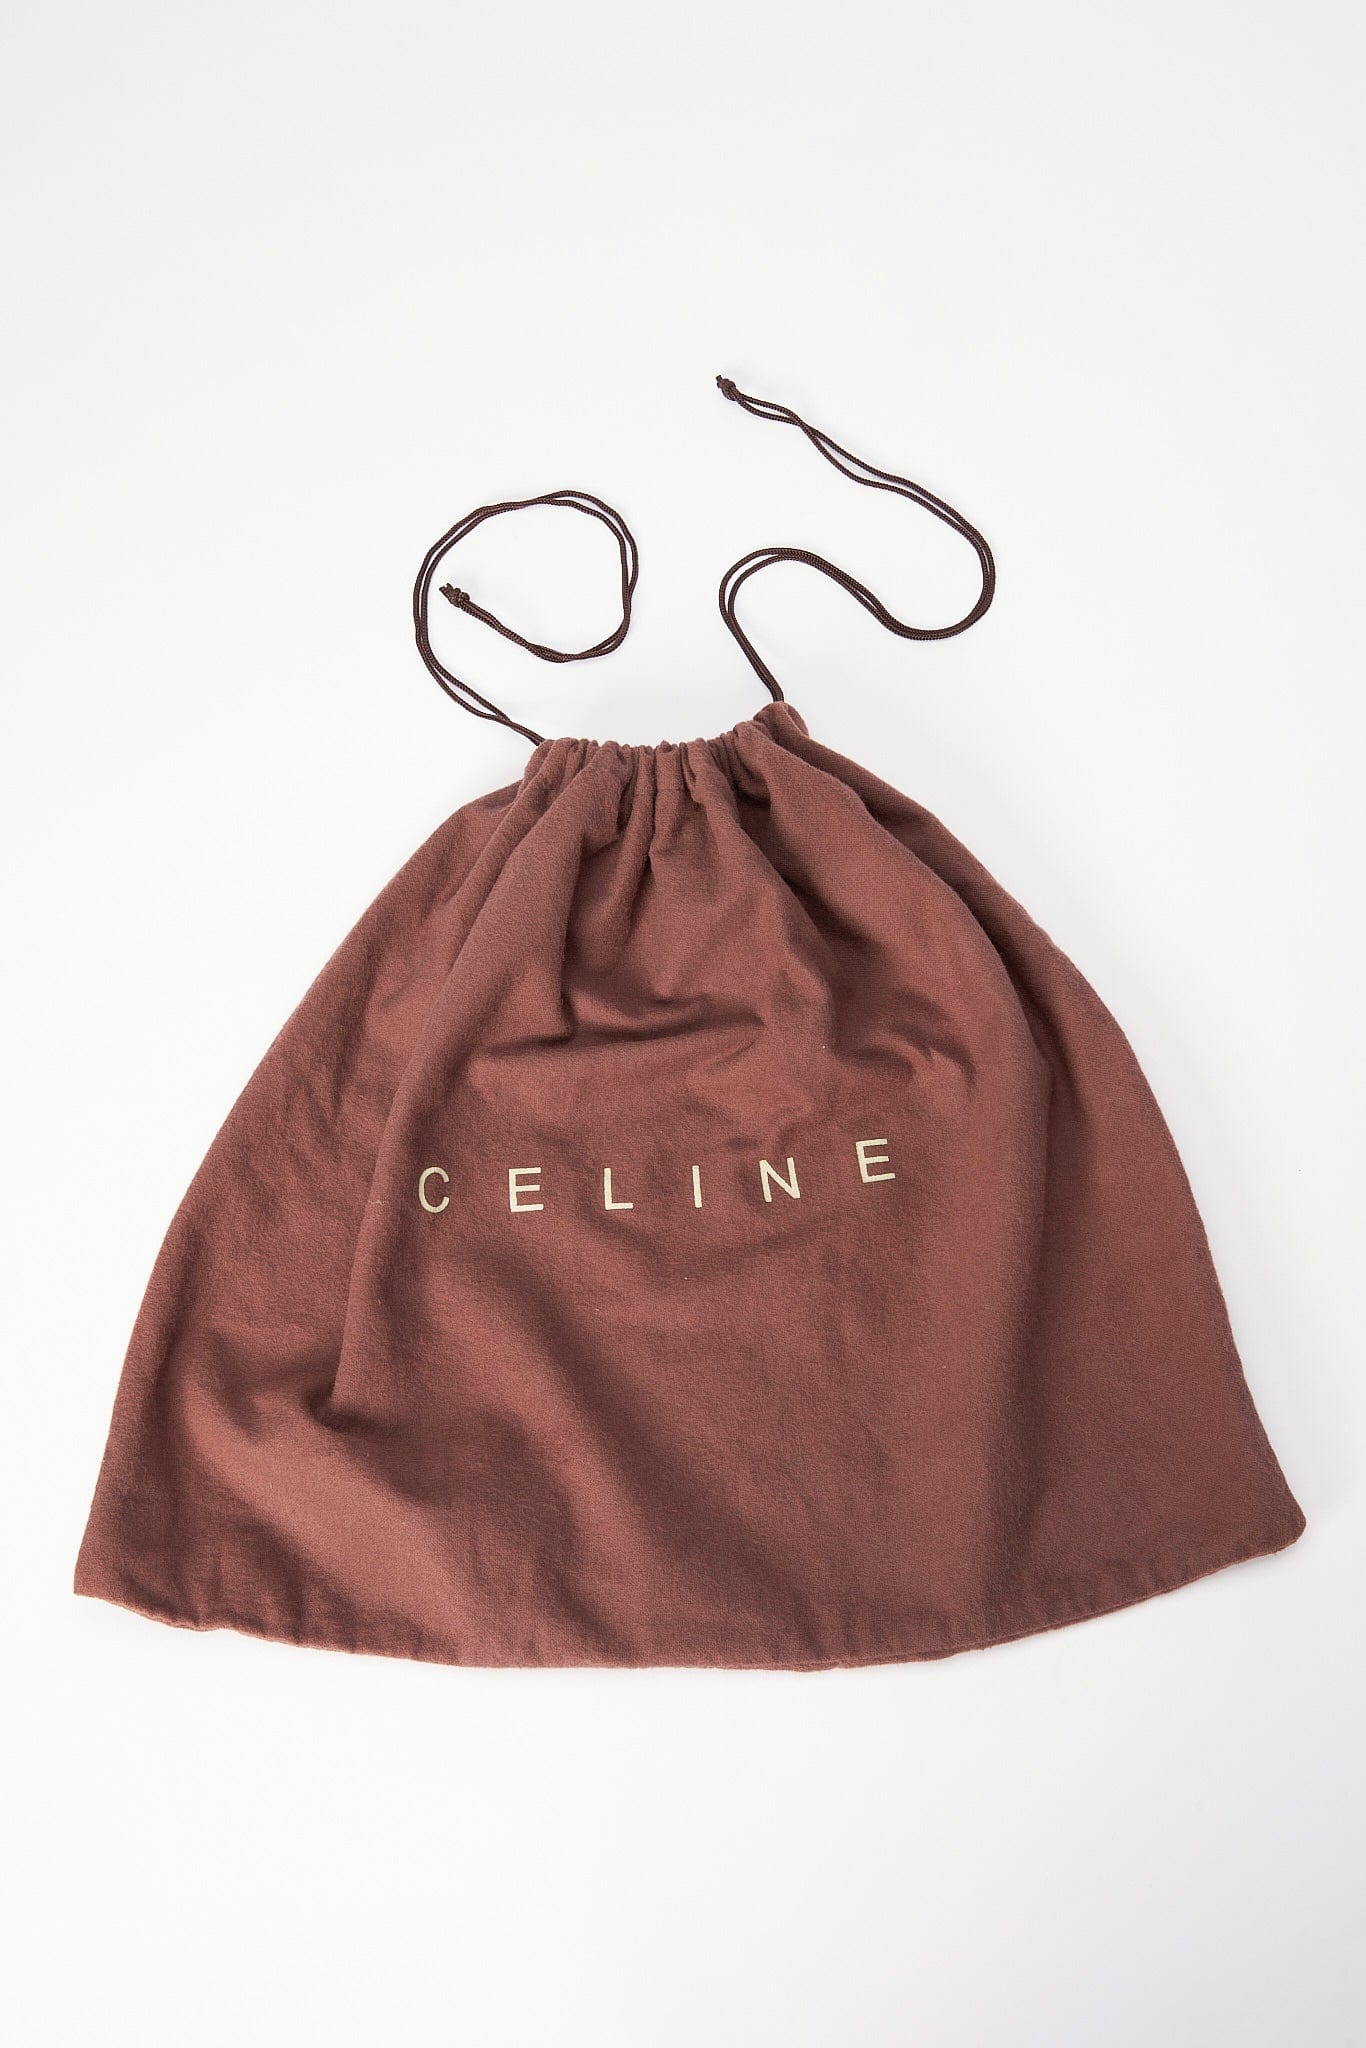 Vintage Celine Canvas Bag